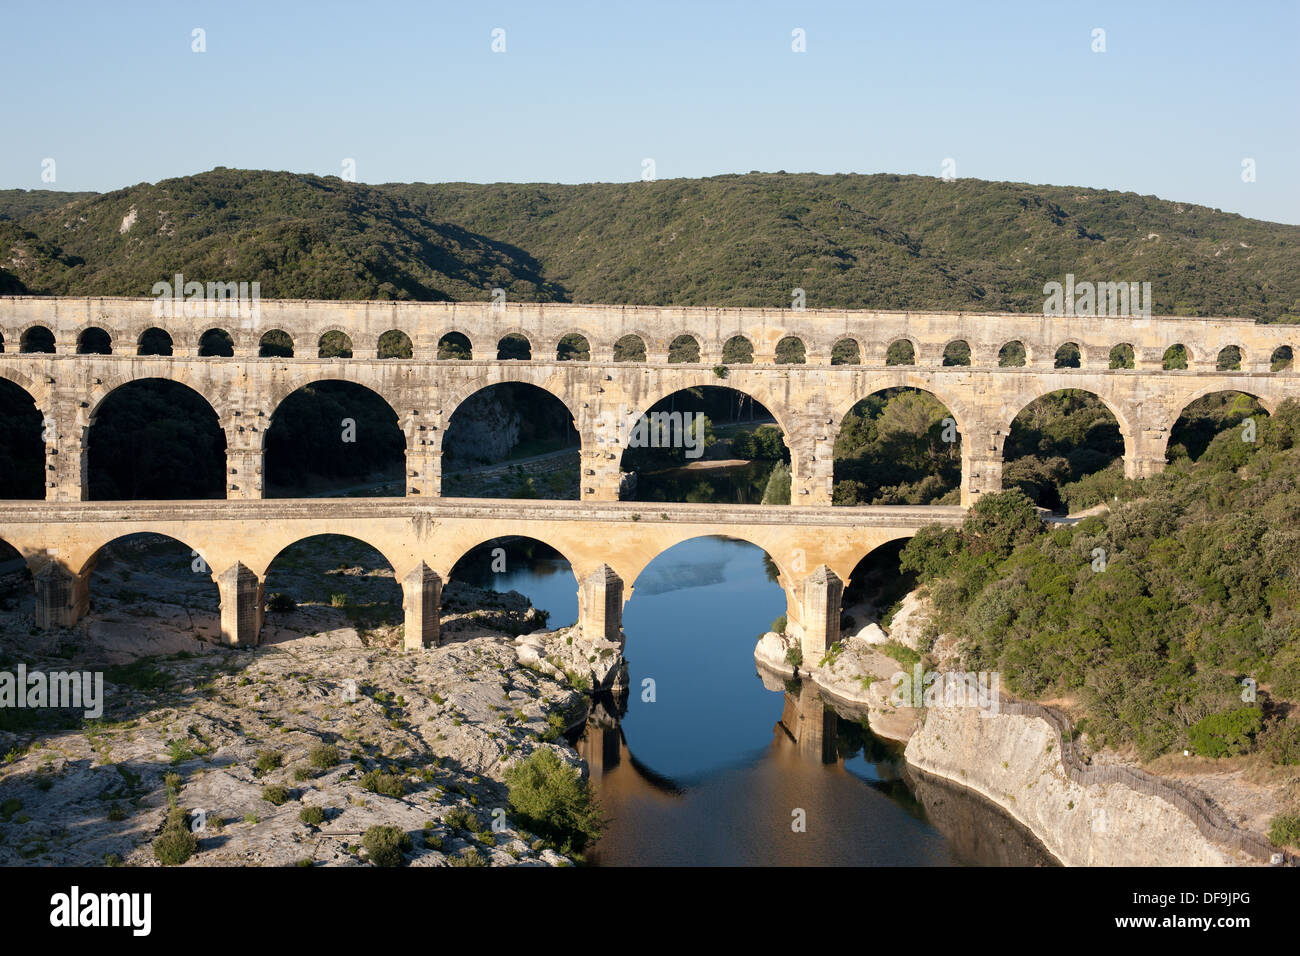 LUFTAUFNAHME. Römische Aquädukt-Brücke über den Gard (auch Gardon genannt) River. Auf der UNESCO-Liste des Weltkulturerbes. Pont du Gard, Österreich, Frankreich. Stockfoto